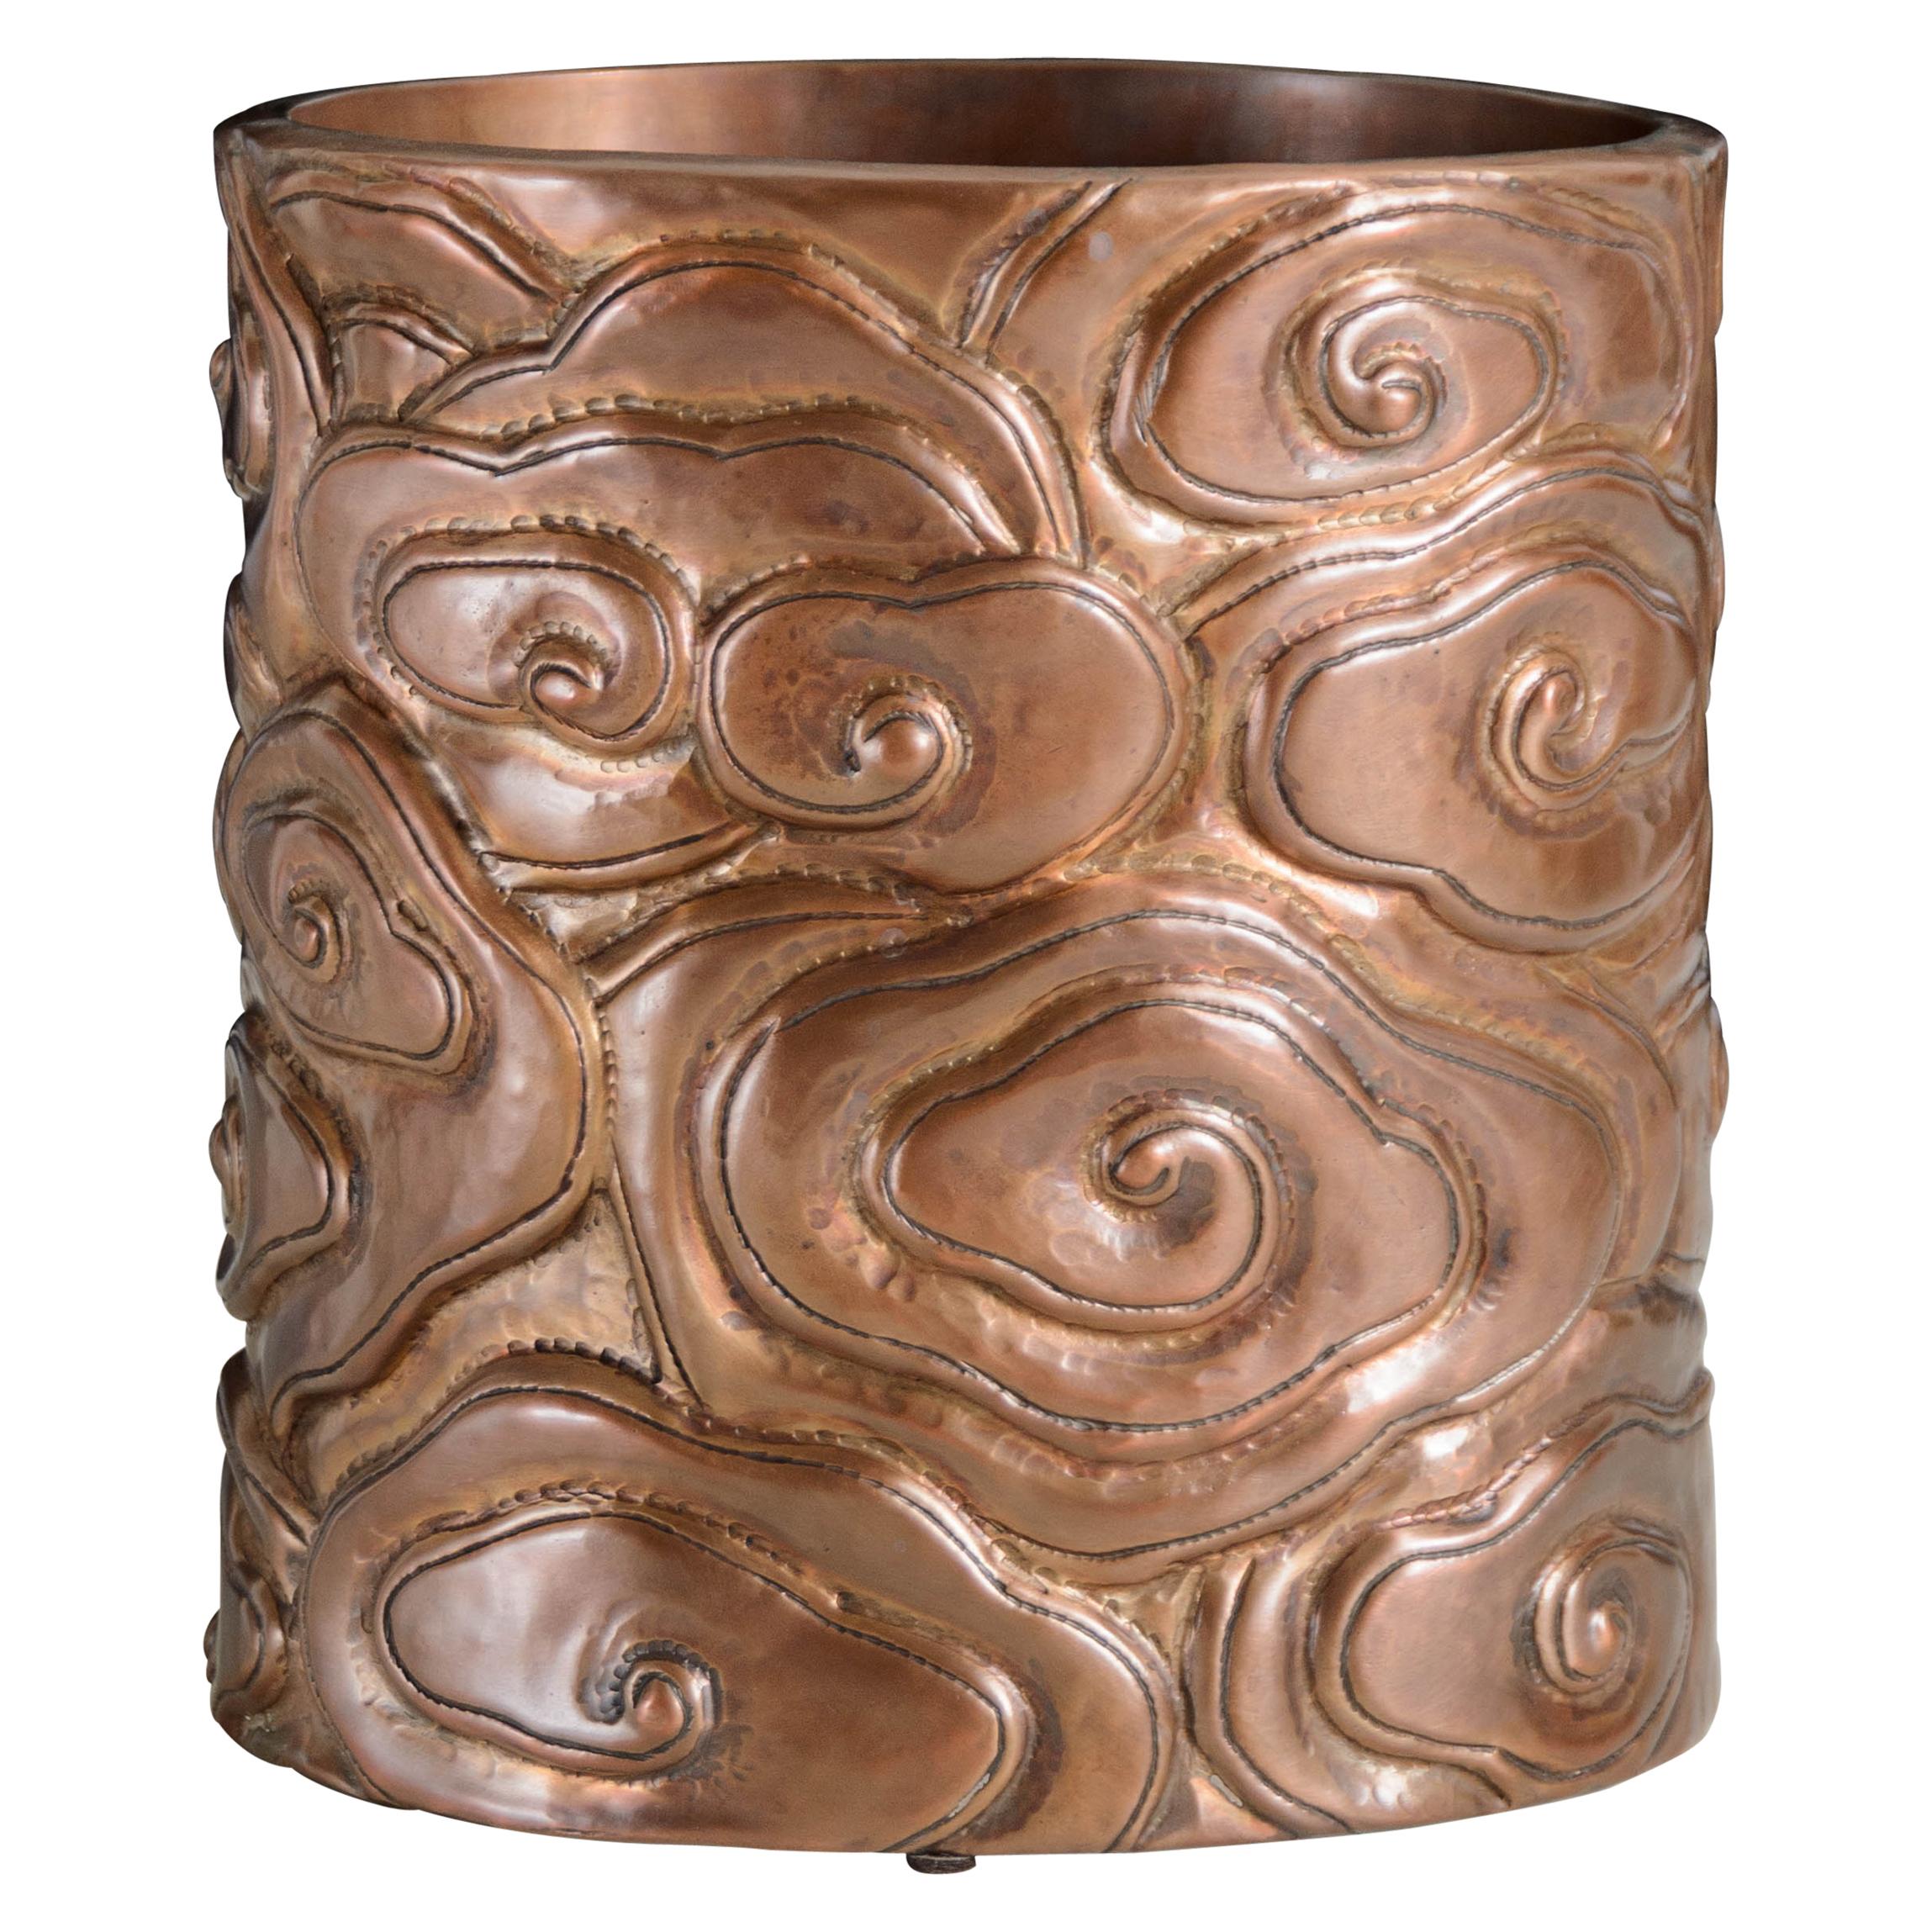 Pots à pinceaux contemporains en cuivre antique de Robert Kuo (motif en forme de nuage)